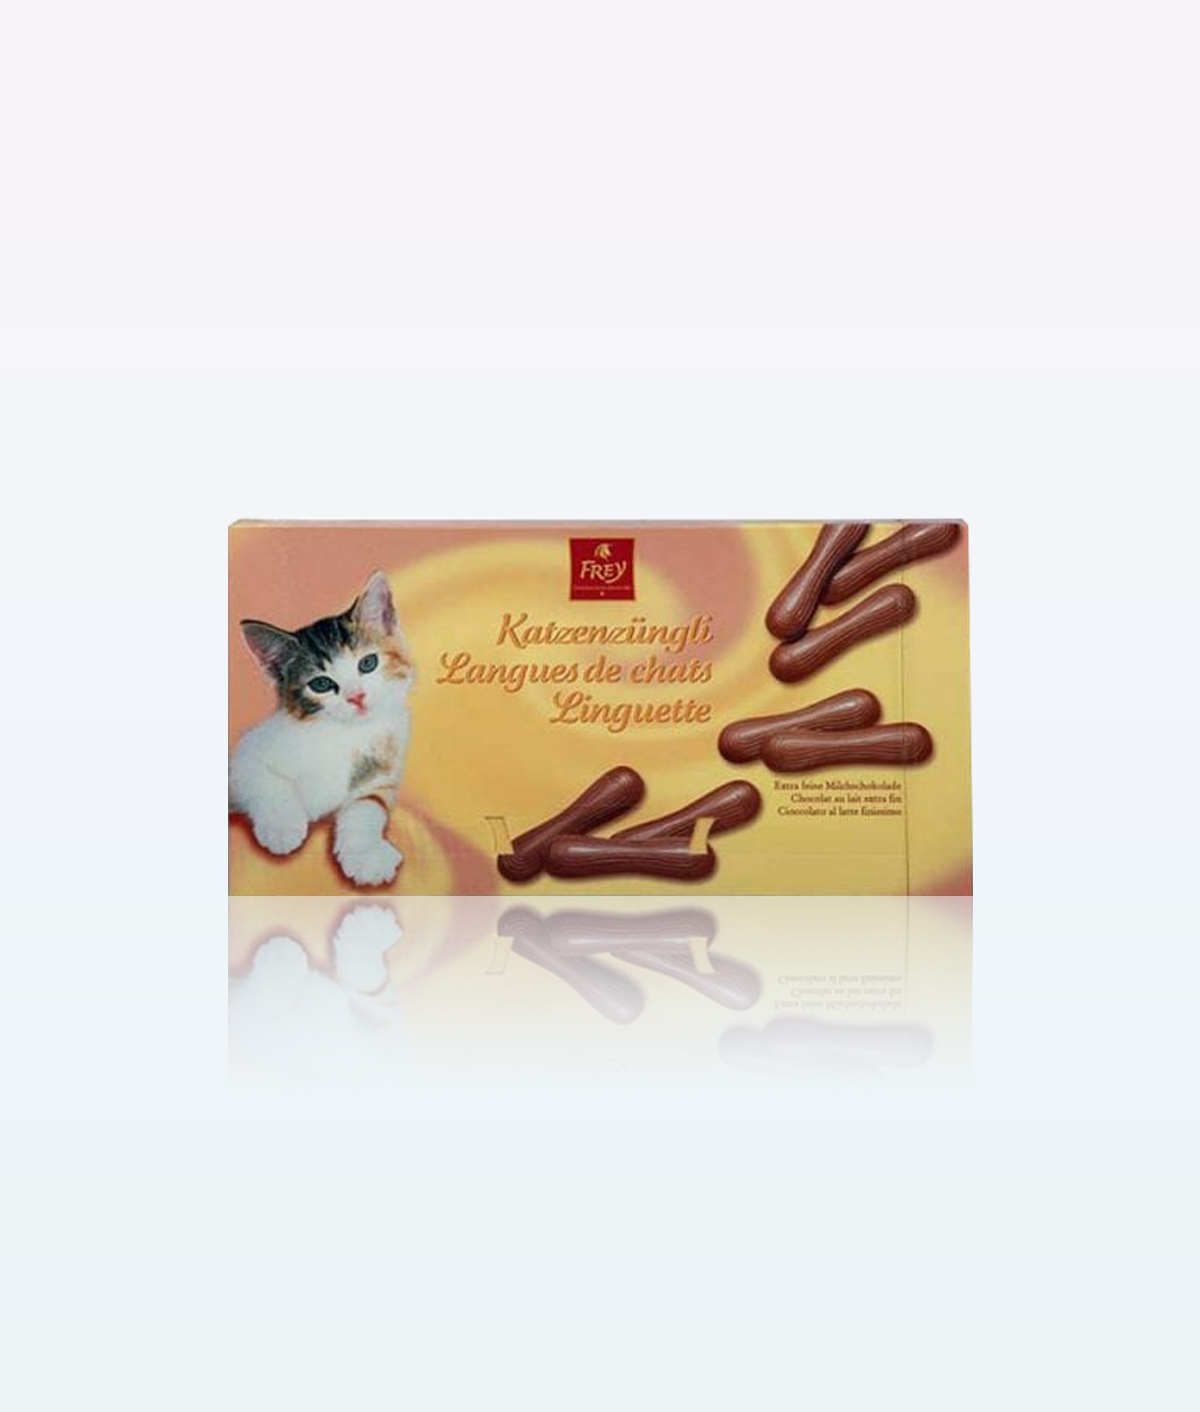 Frey Extra Katzenzngli Milk Chocolate